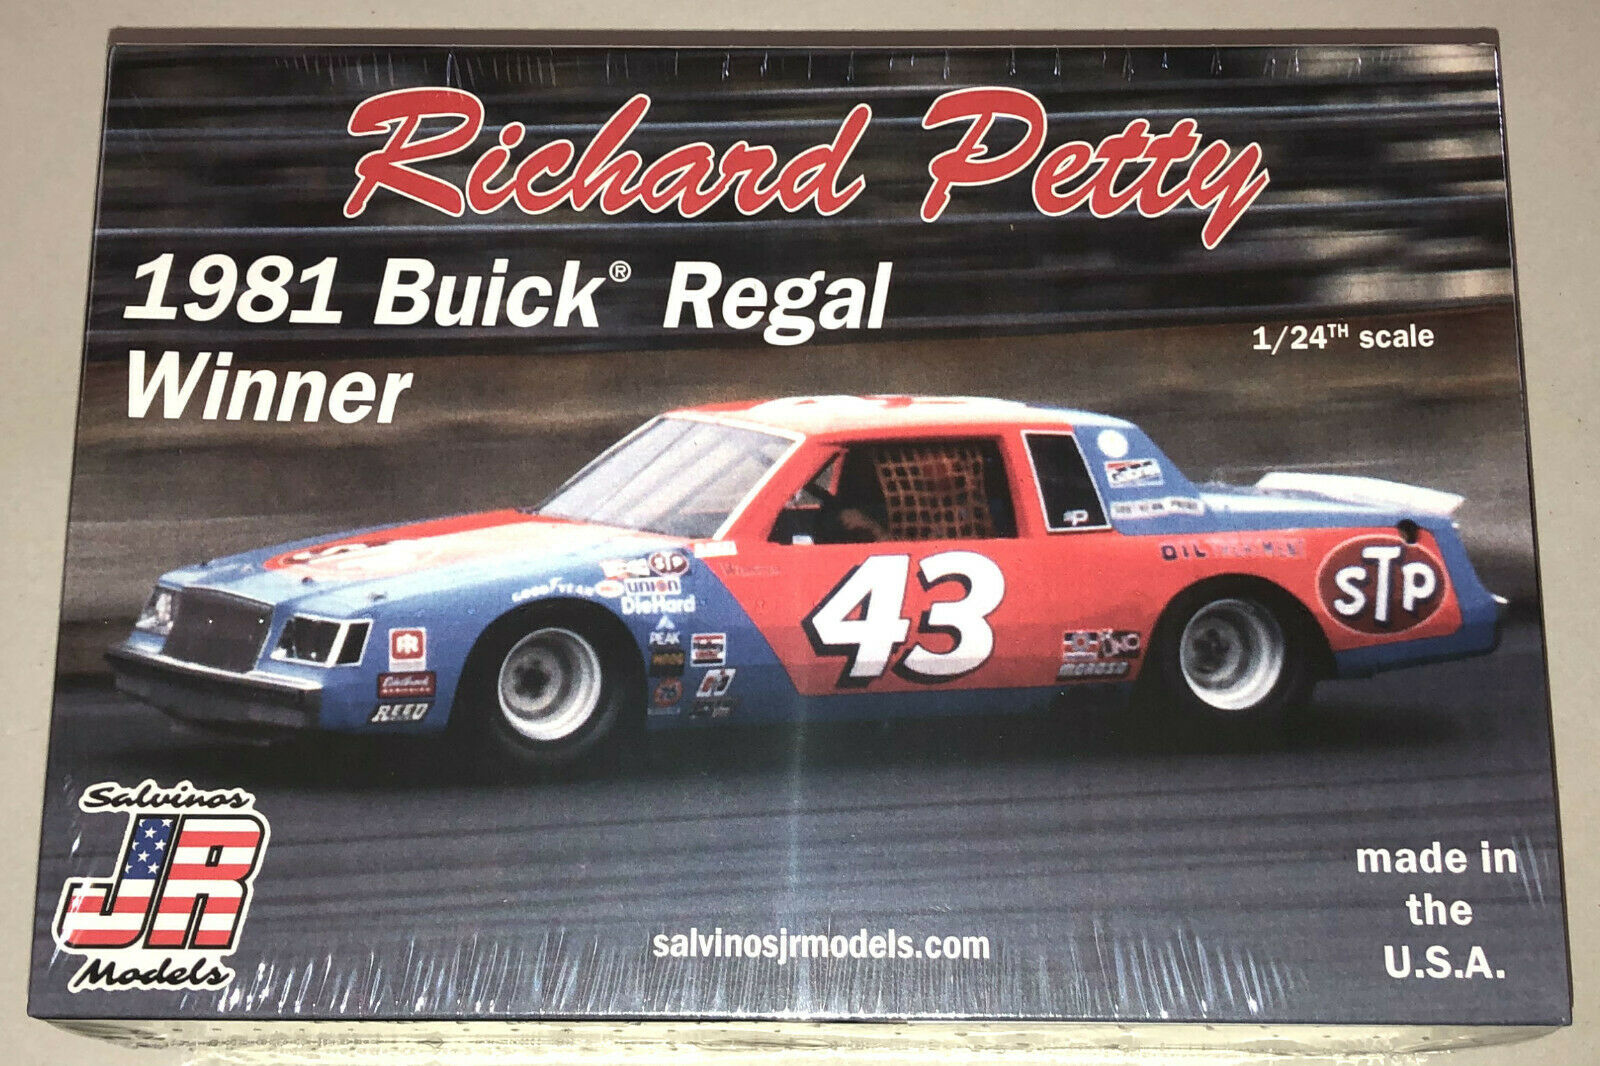 Richard Petty 1981 Buick Regal Stock Car Model Kit